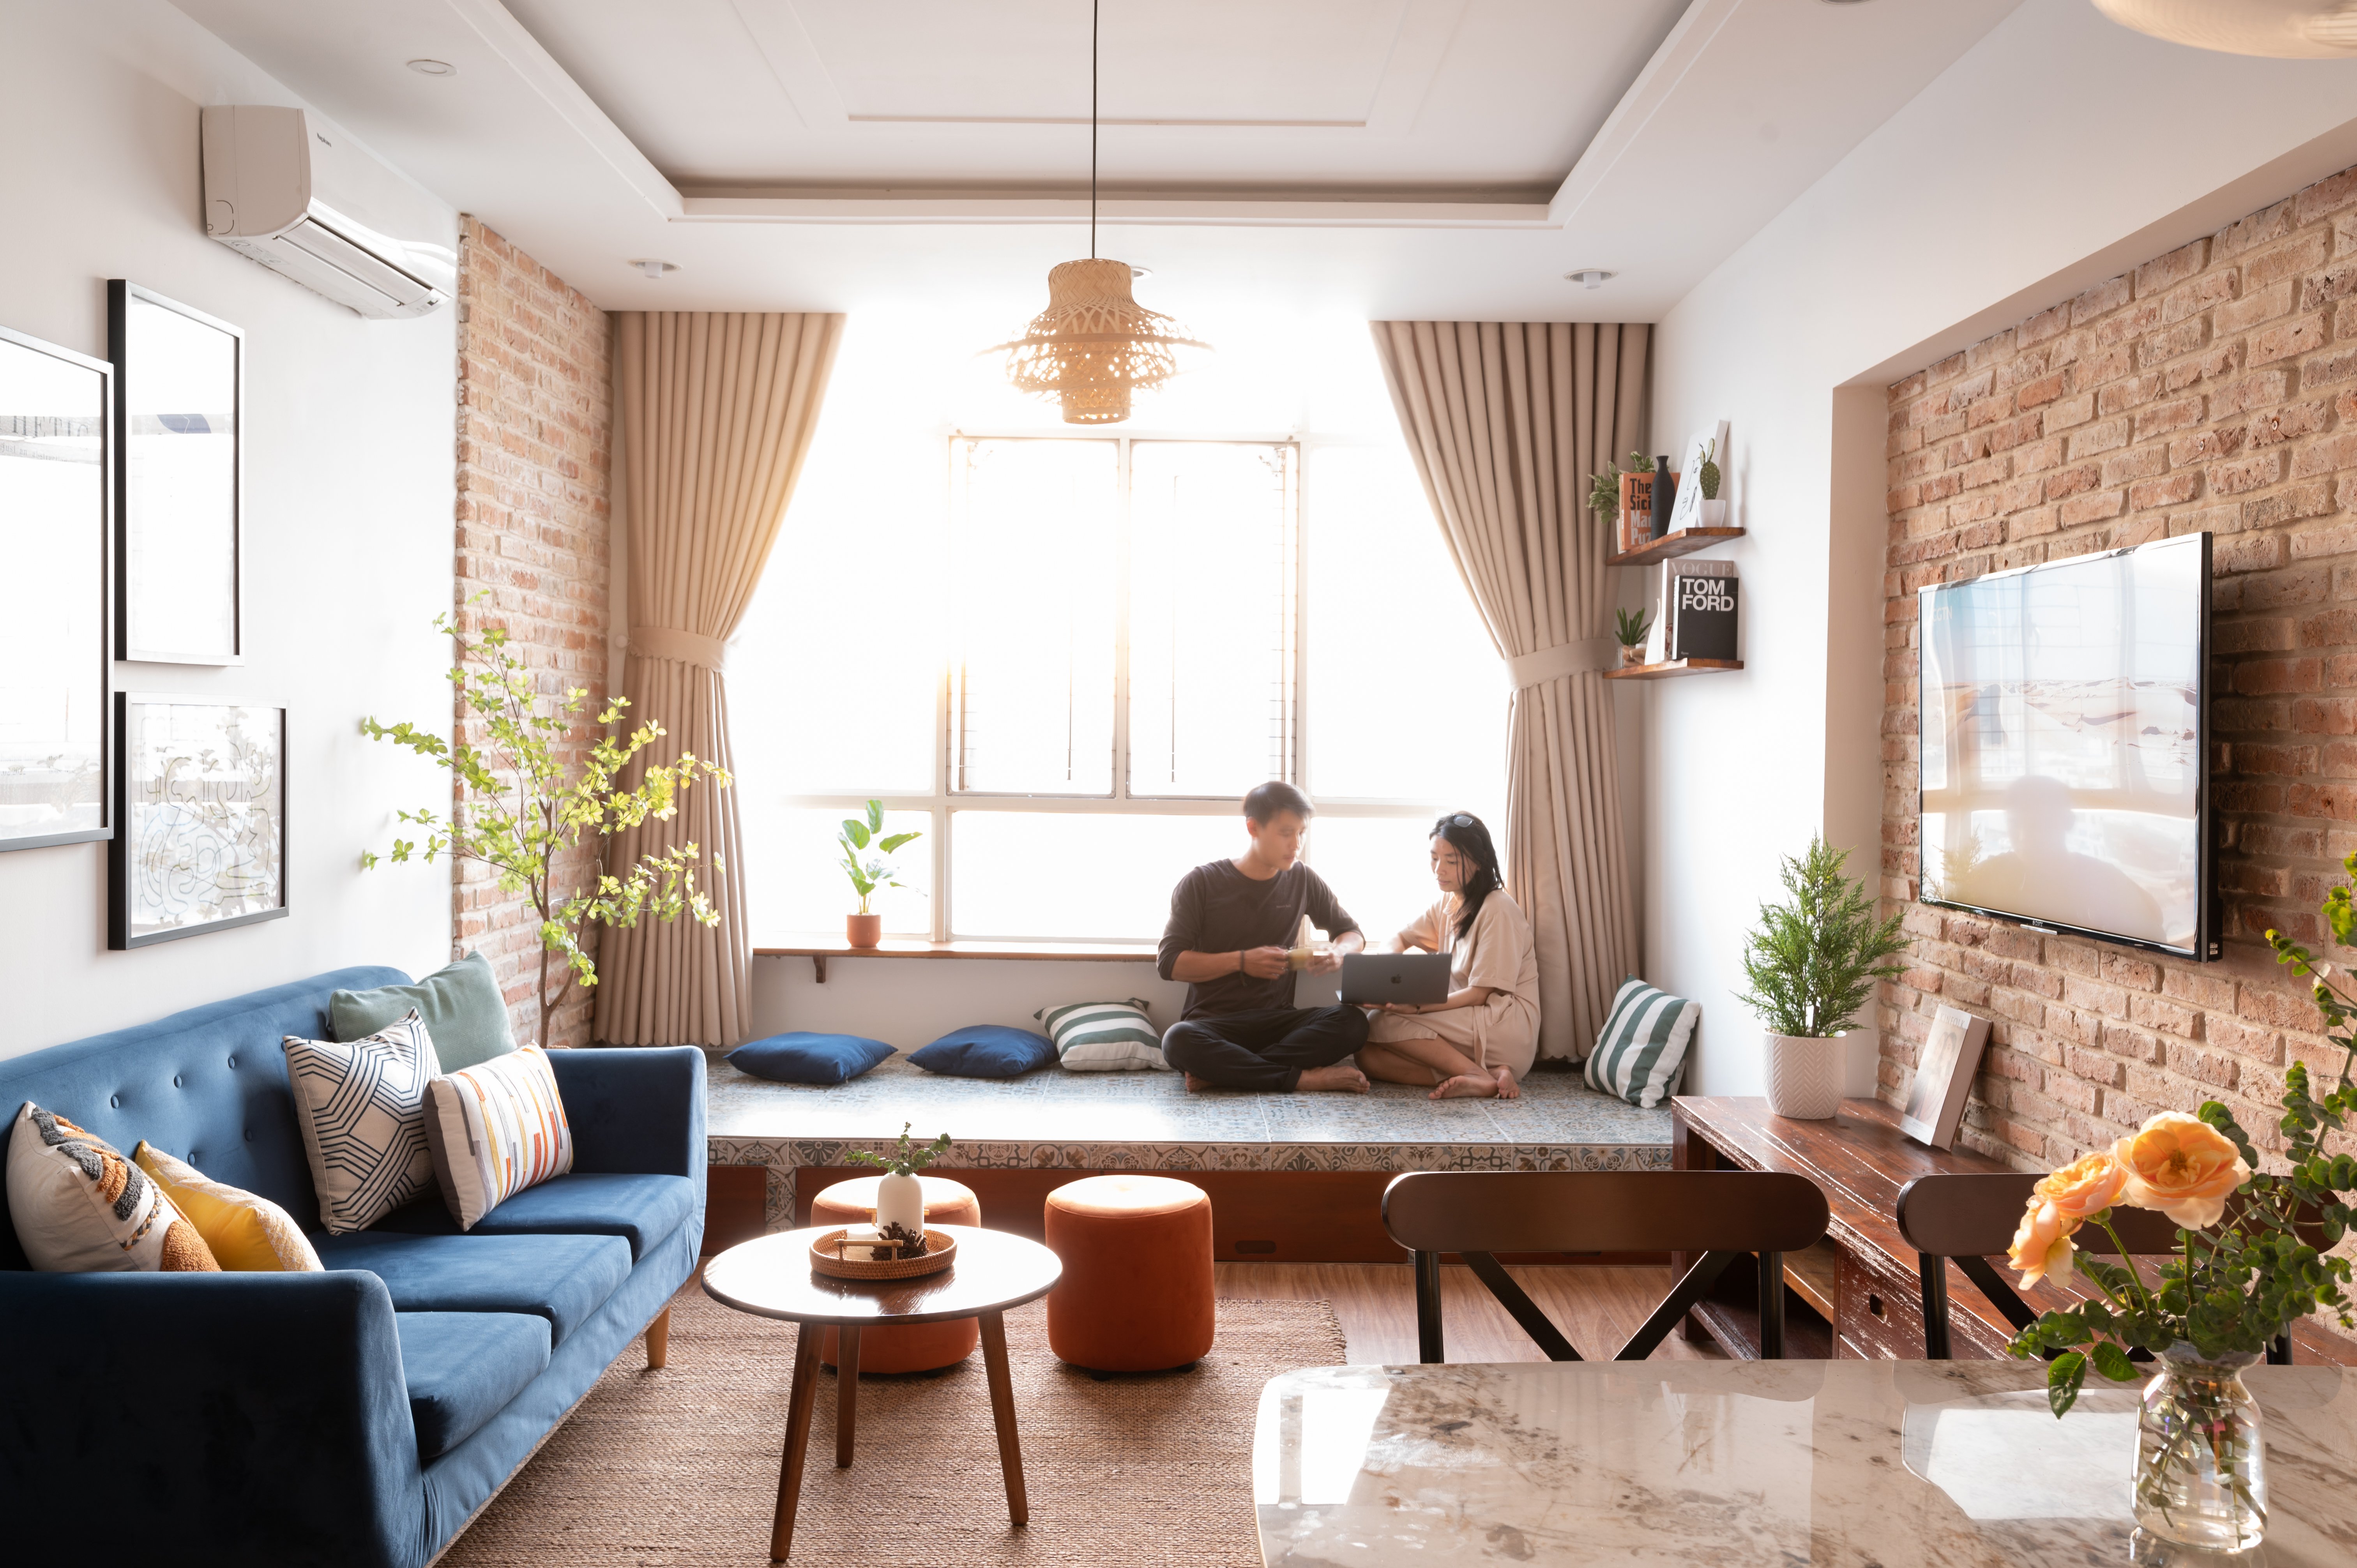 [3/2022] Dự án cải tạo căn hộ cho thuê du lịch tại Quy Nhơn - Before & After 23